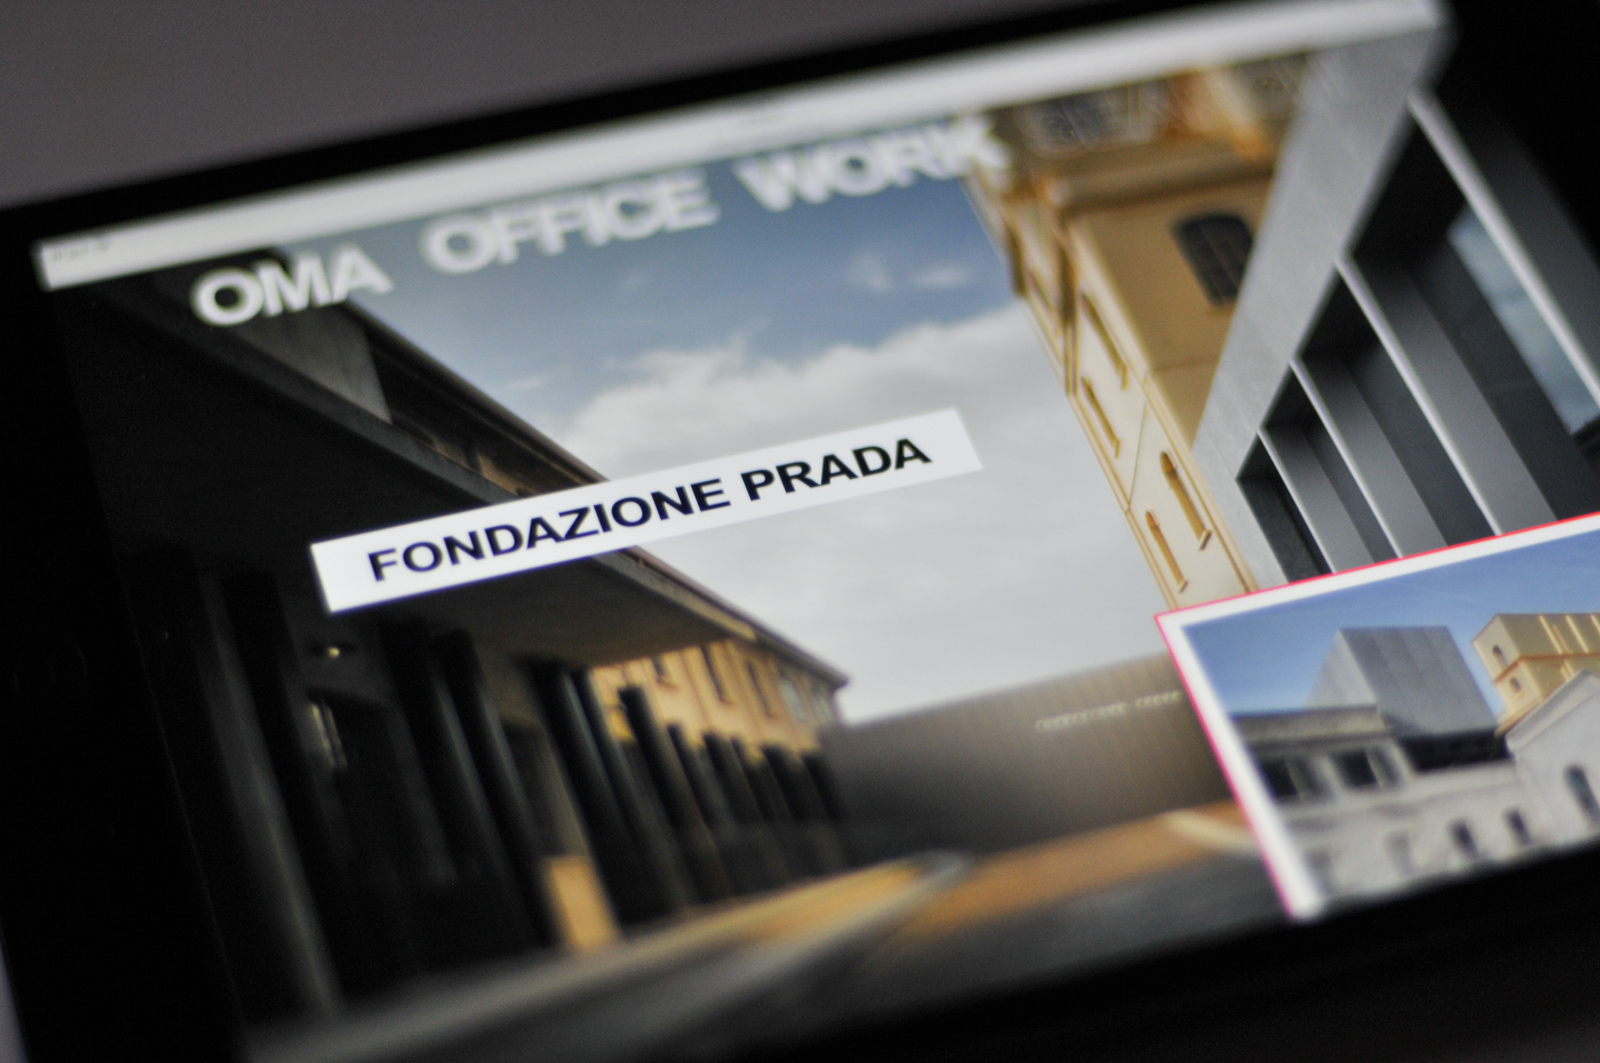 Fondazione Prada on the front page